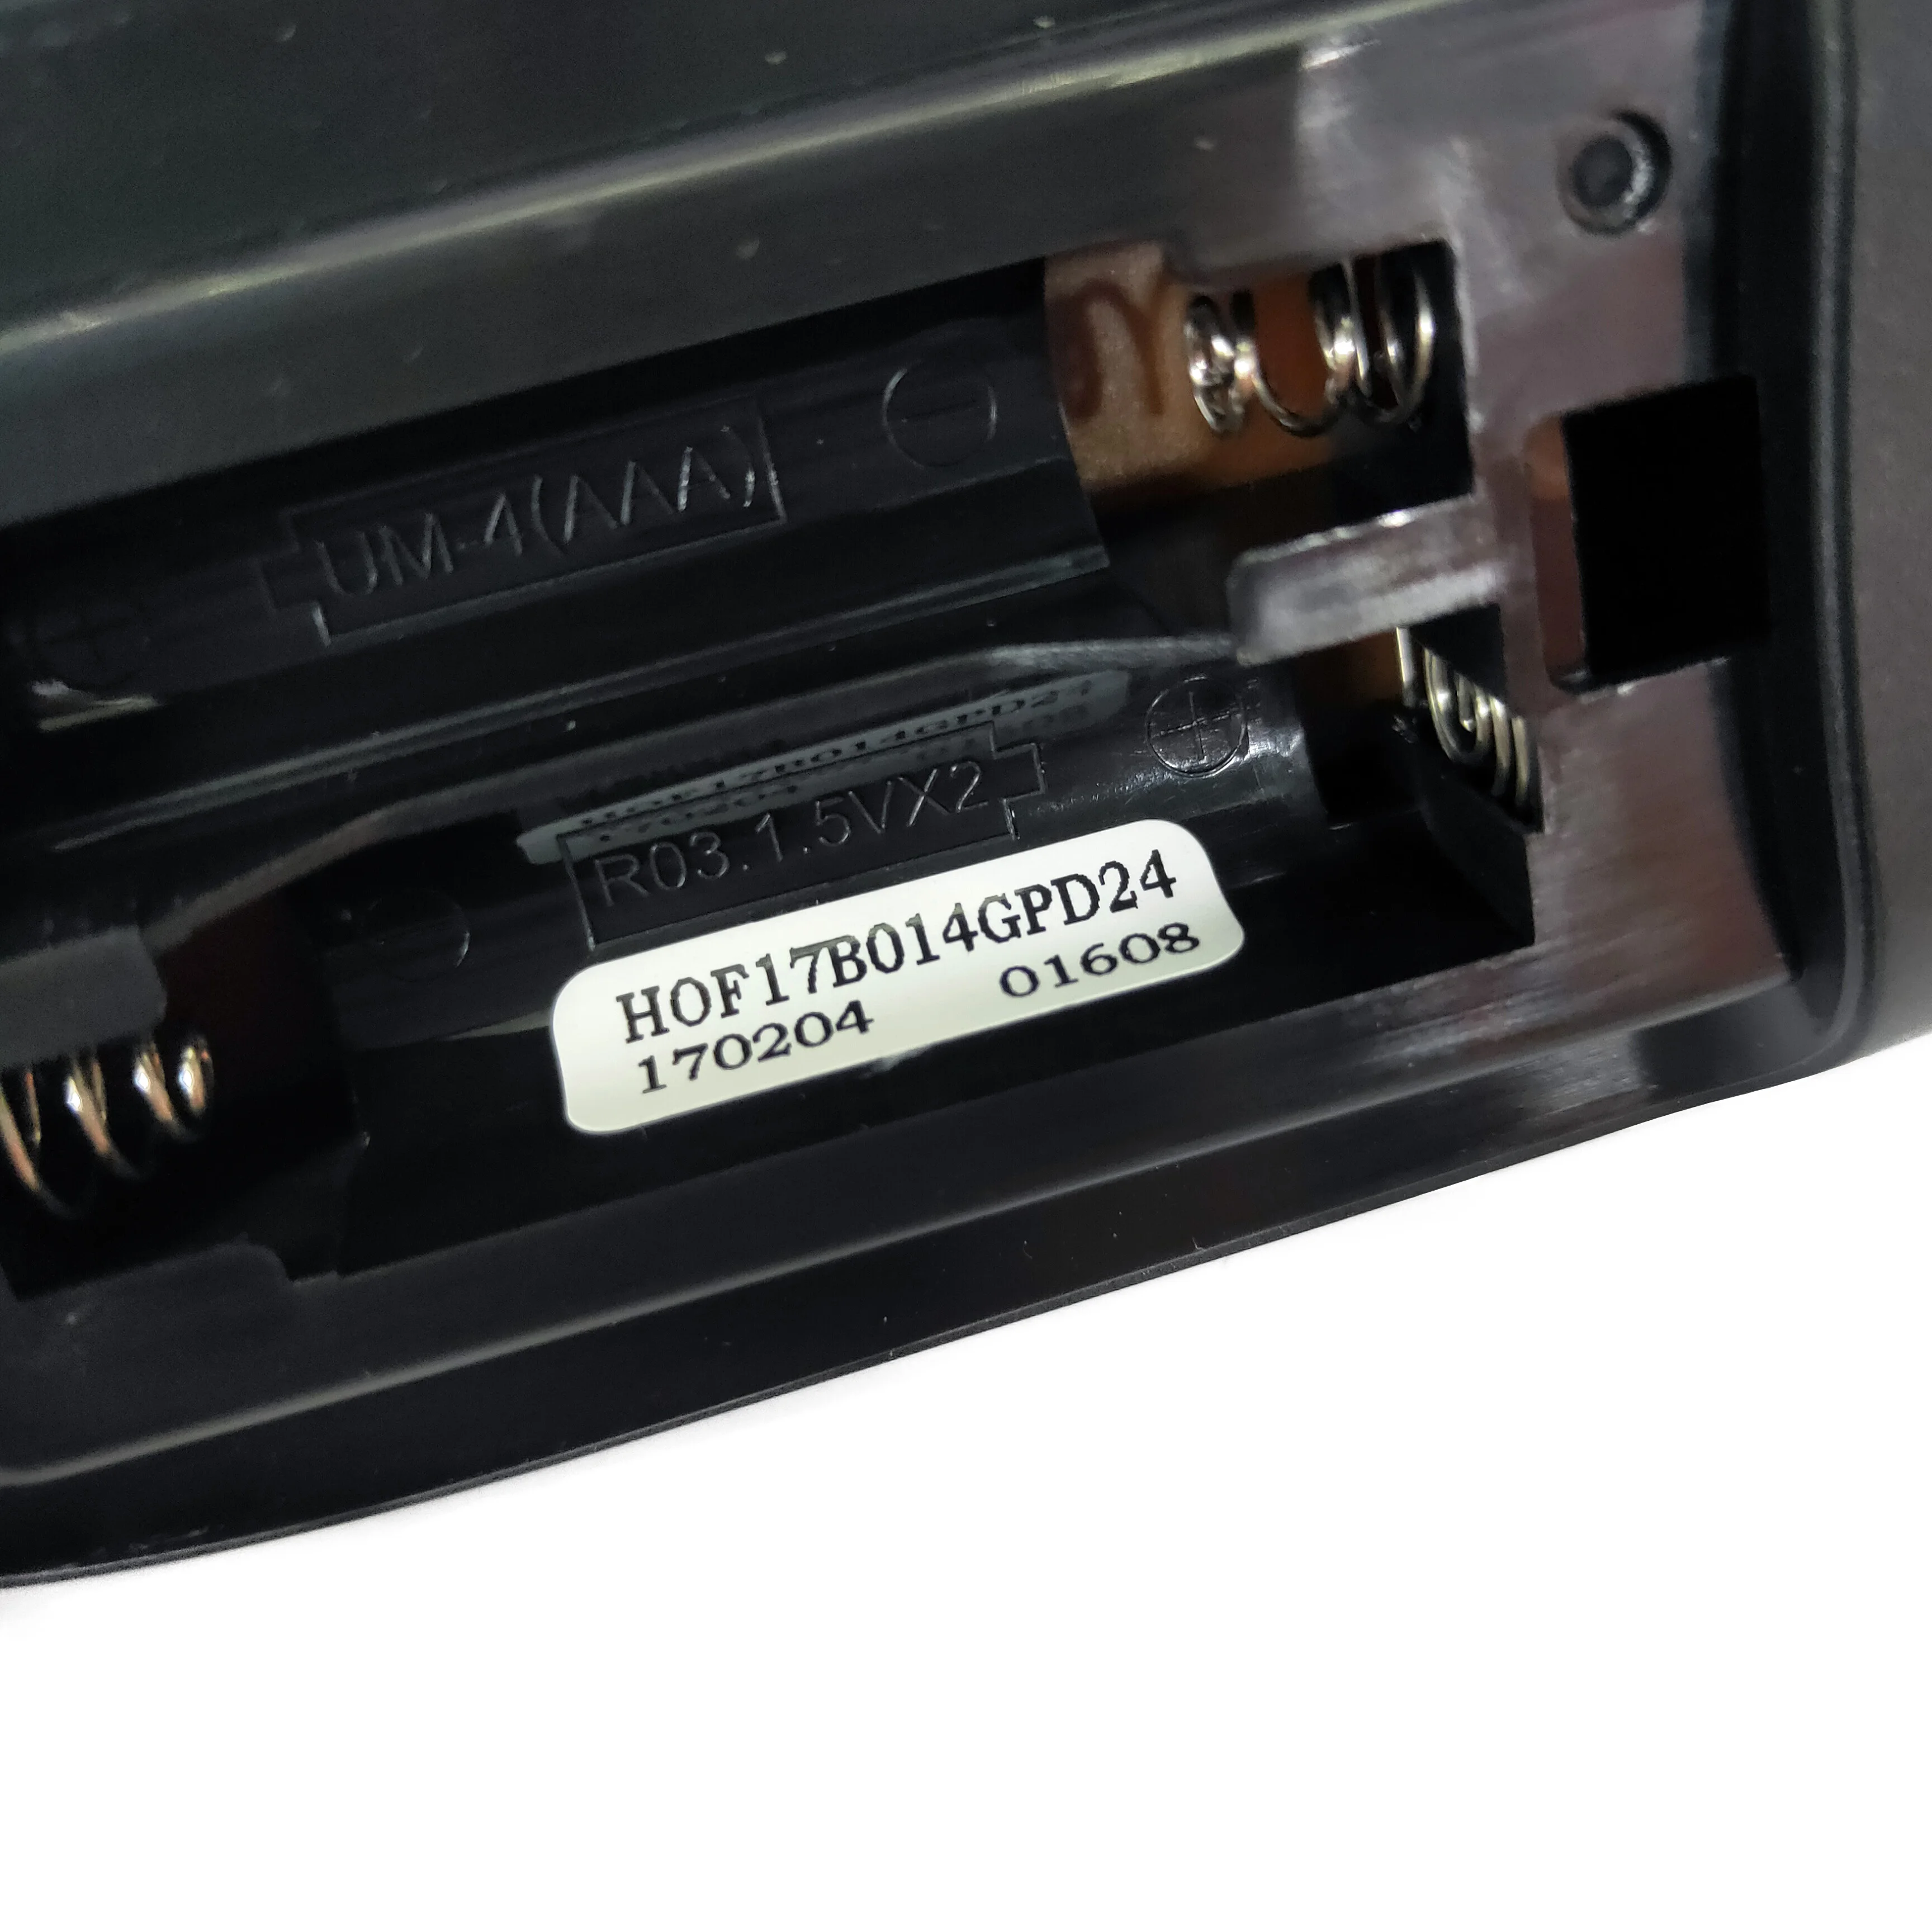 NOVI i originalni LCD televizor Skyworth COOCAA daljinski Upravljač HOF17B014GPD24 Fernbedienung